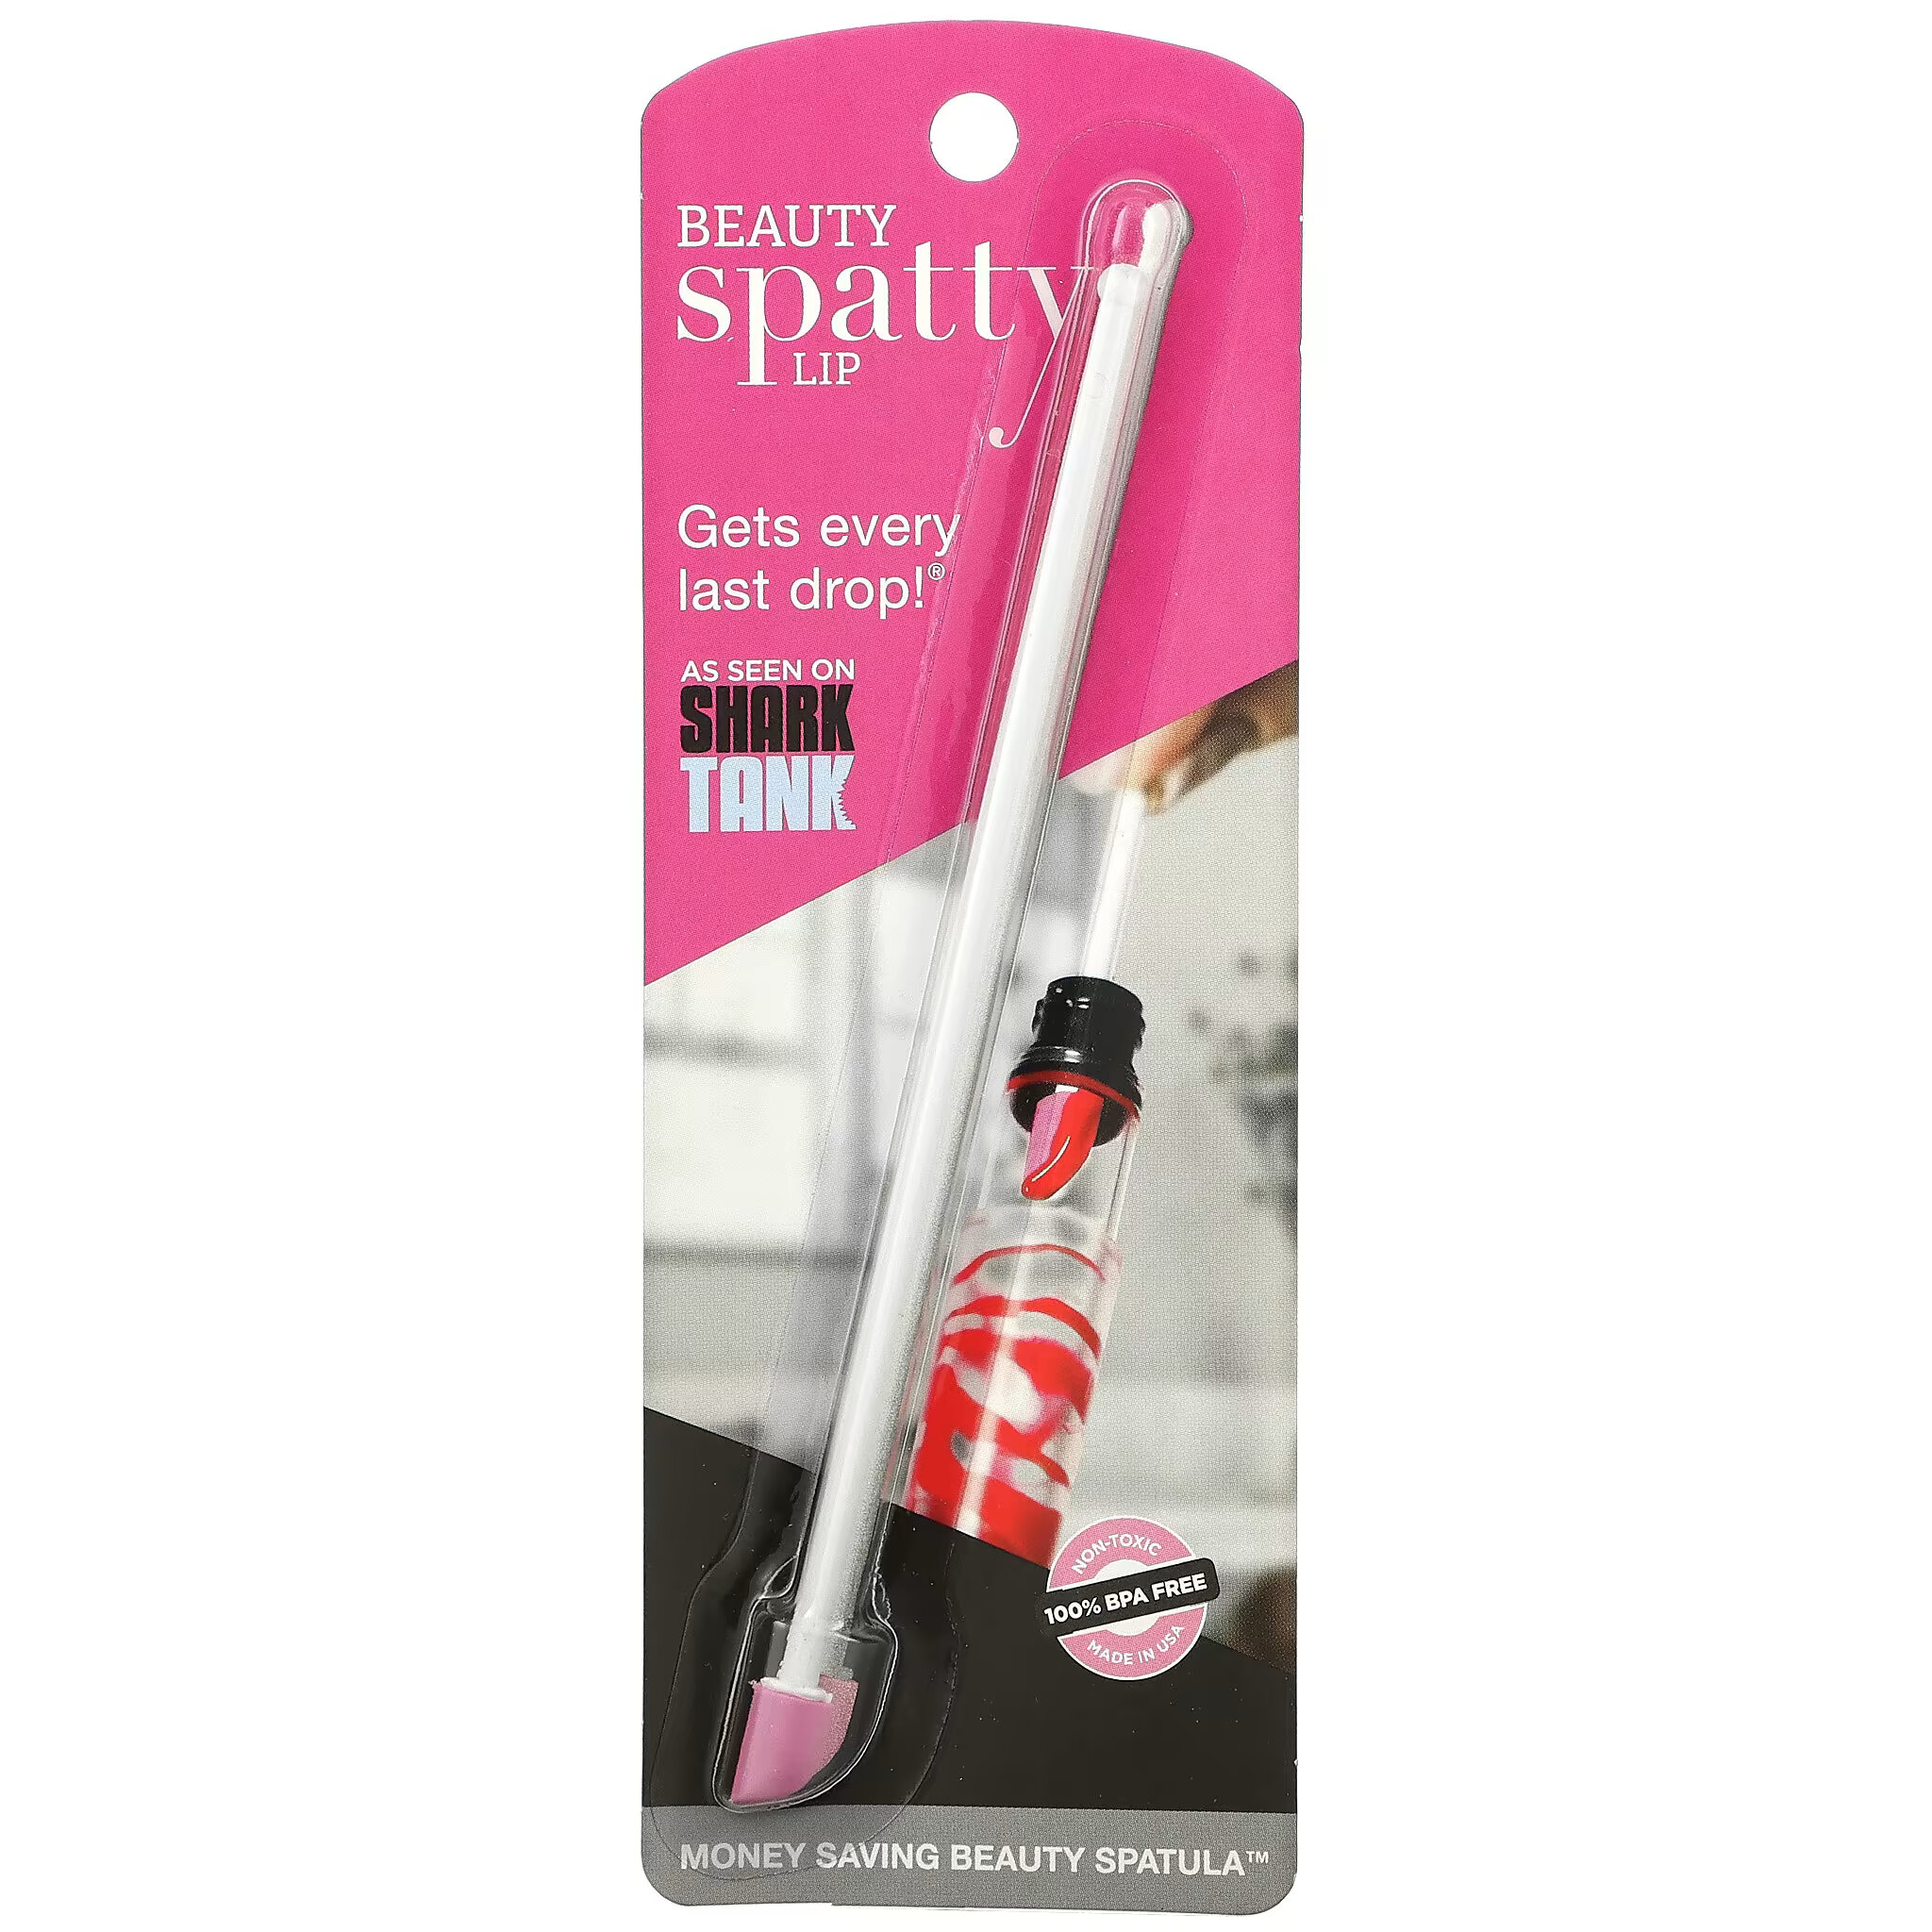 Spatty, Lip Beauty Spatty, 1 шт. цена и фото